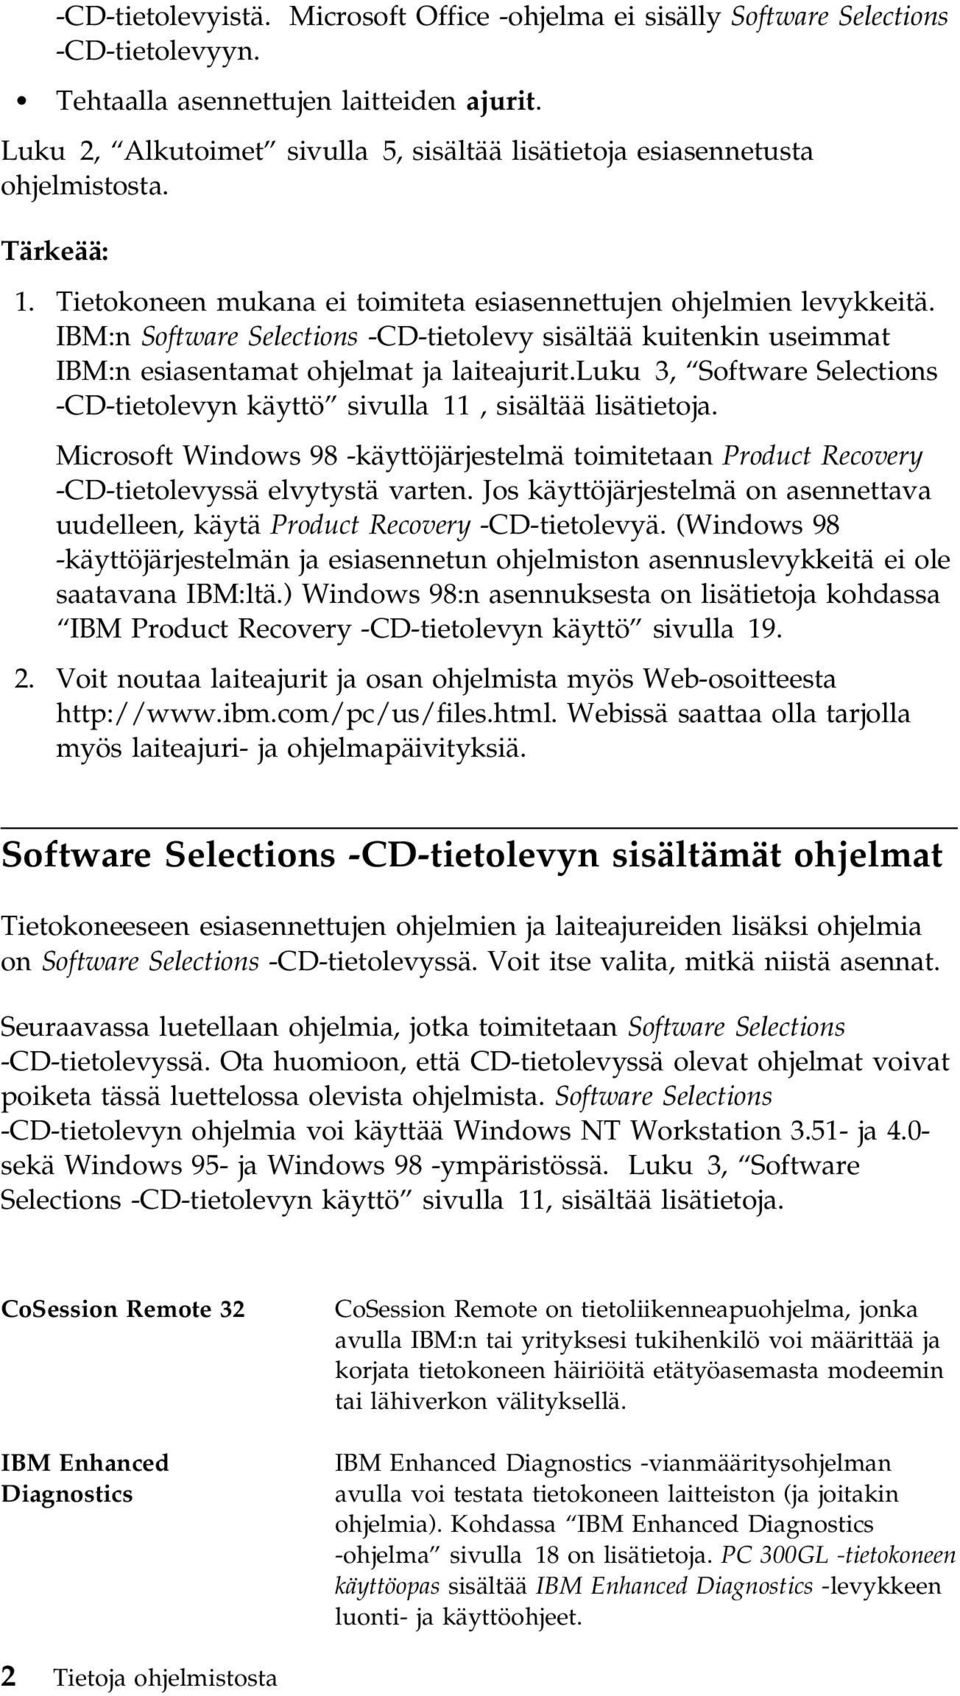 IBM:n Software Selections -CD-tietolevy sisältää kuitenkin useimmat IBM:n esiasentamat ohjelmat ja laiteajurit.luku 3, Software Selections -CD-tietolevyn käyttö sivulla 11, sisältää lisätietoja.